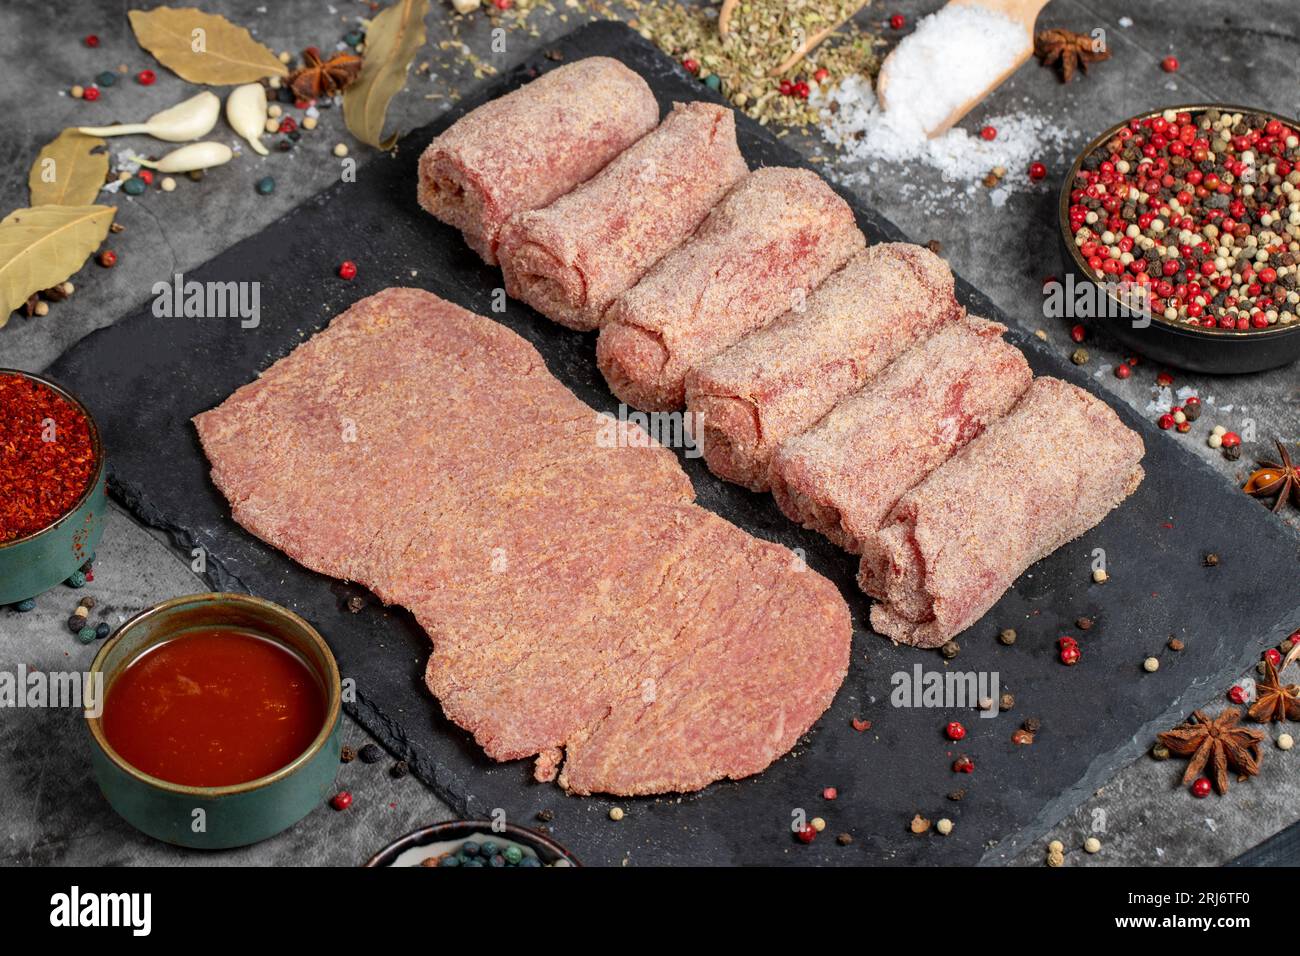 Schnitzel de carne. Schnitzel de carne cruda sobre fondo oscuro. Productos de carnicería Foto de stock